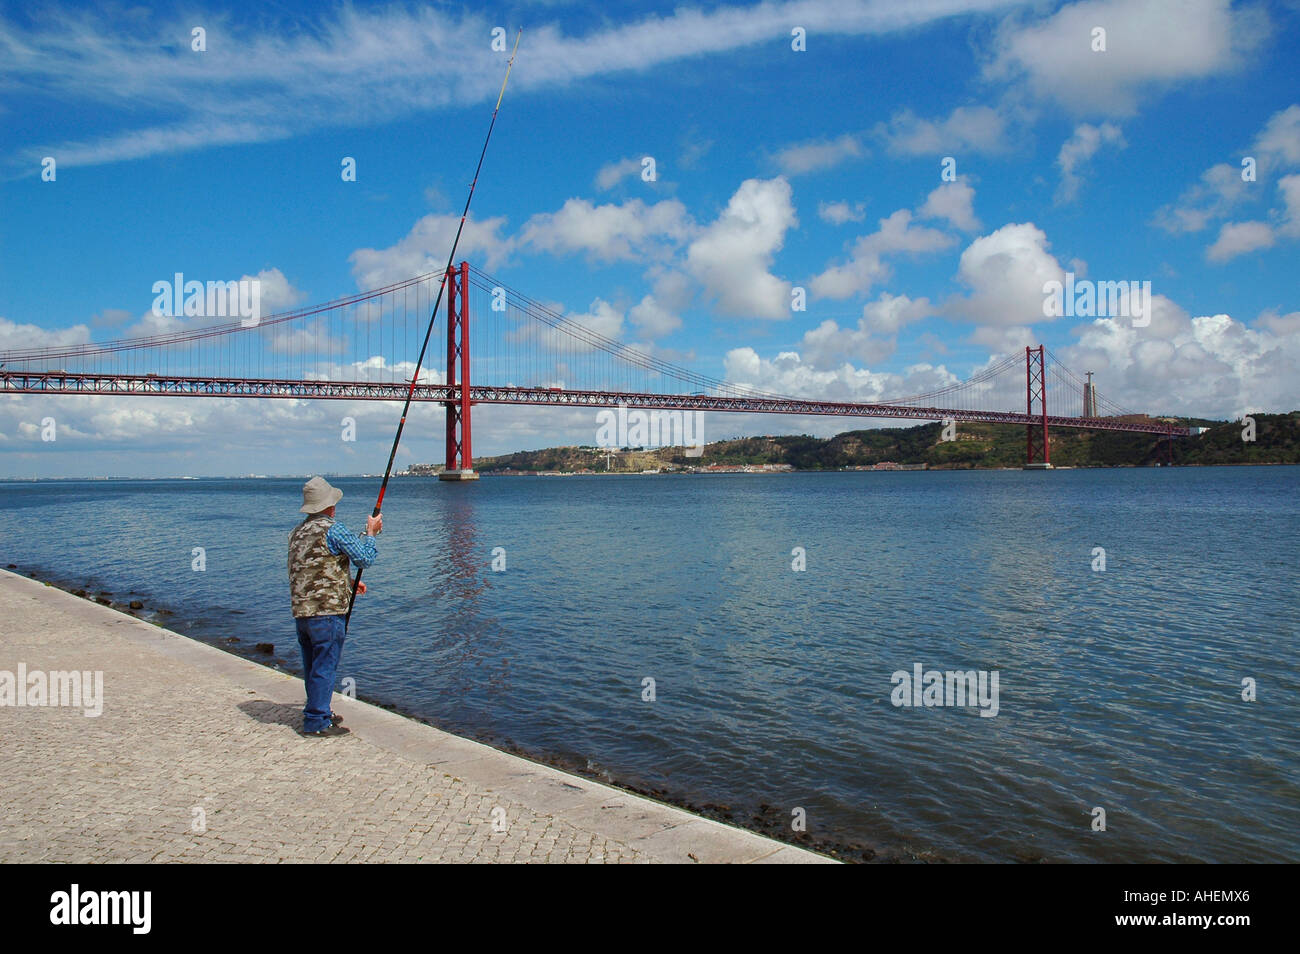 L'homme pêche avec une canne à pêche près de la rivière Tagus pont ou pont du 25 avril (Ponte 25 de Abril) à Lisbonne, Portugal Banque D'Images